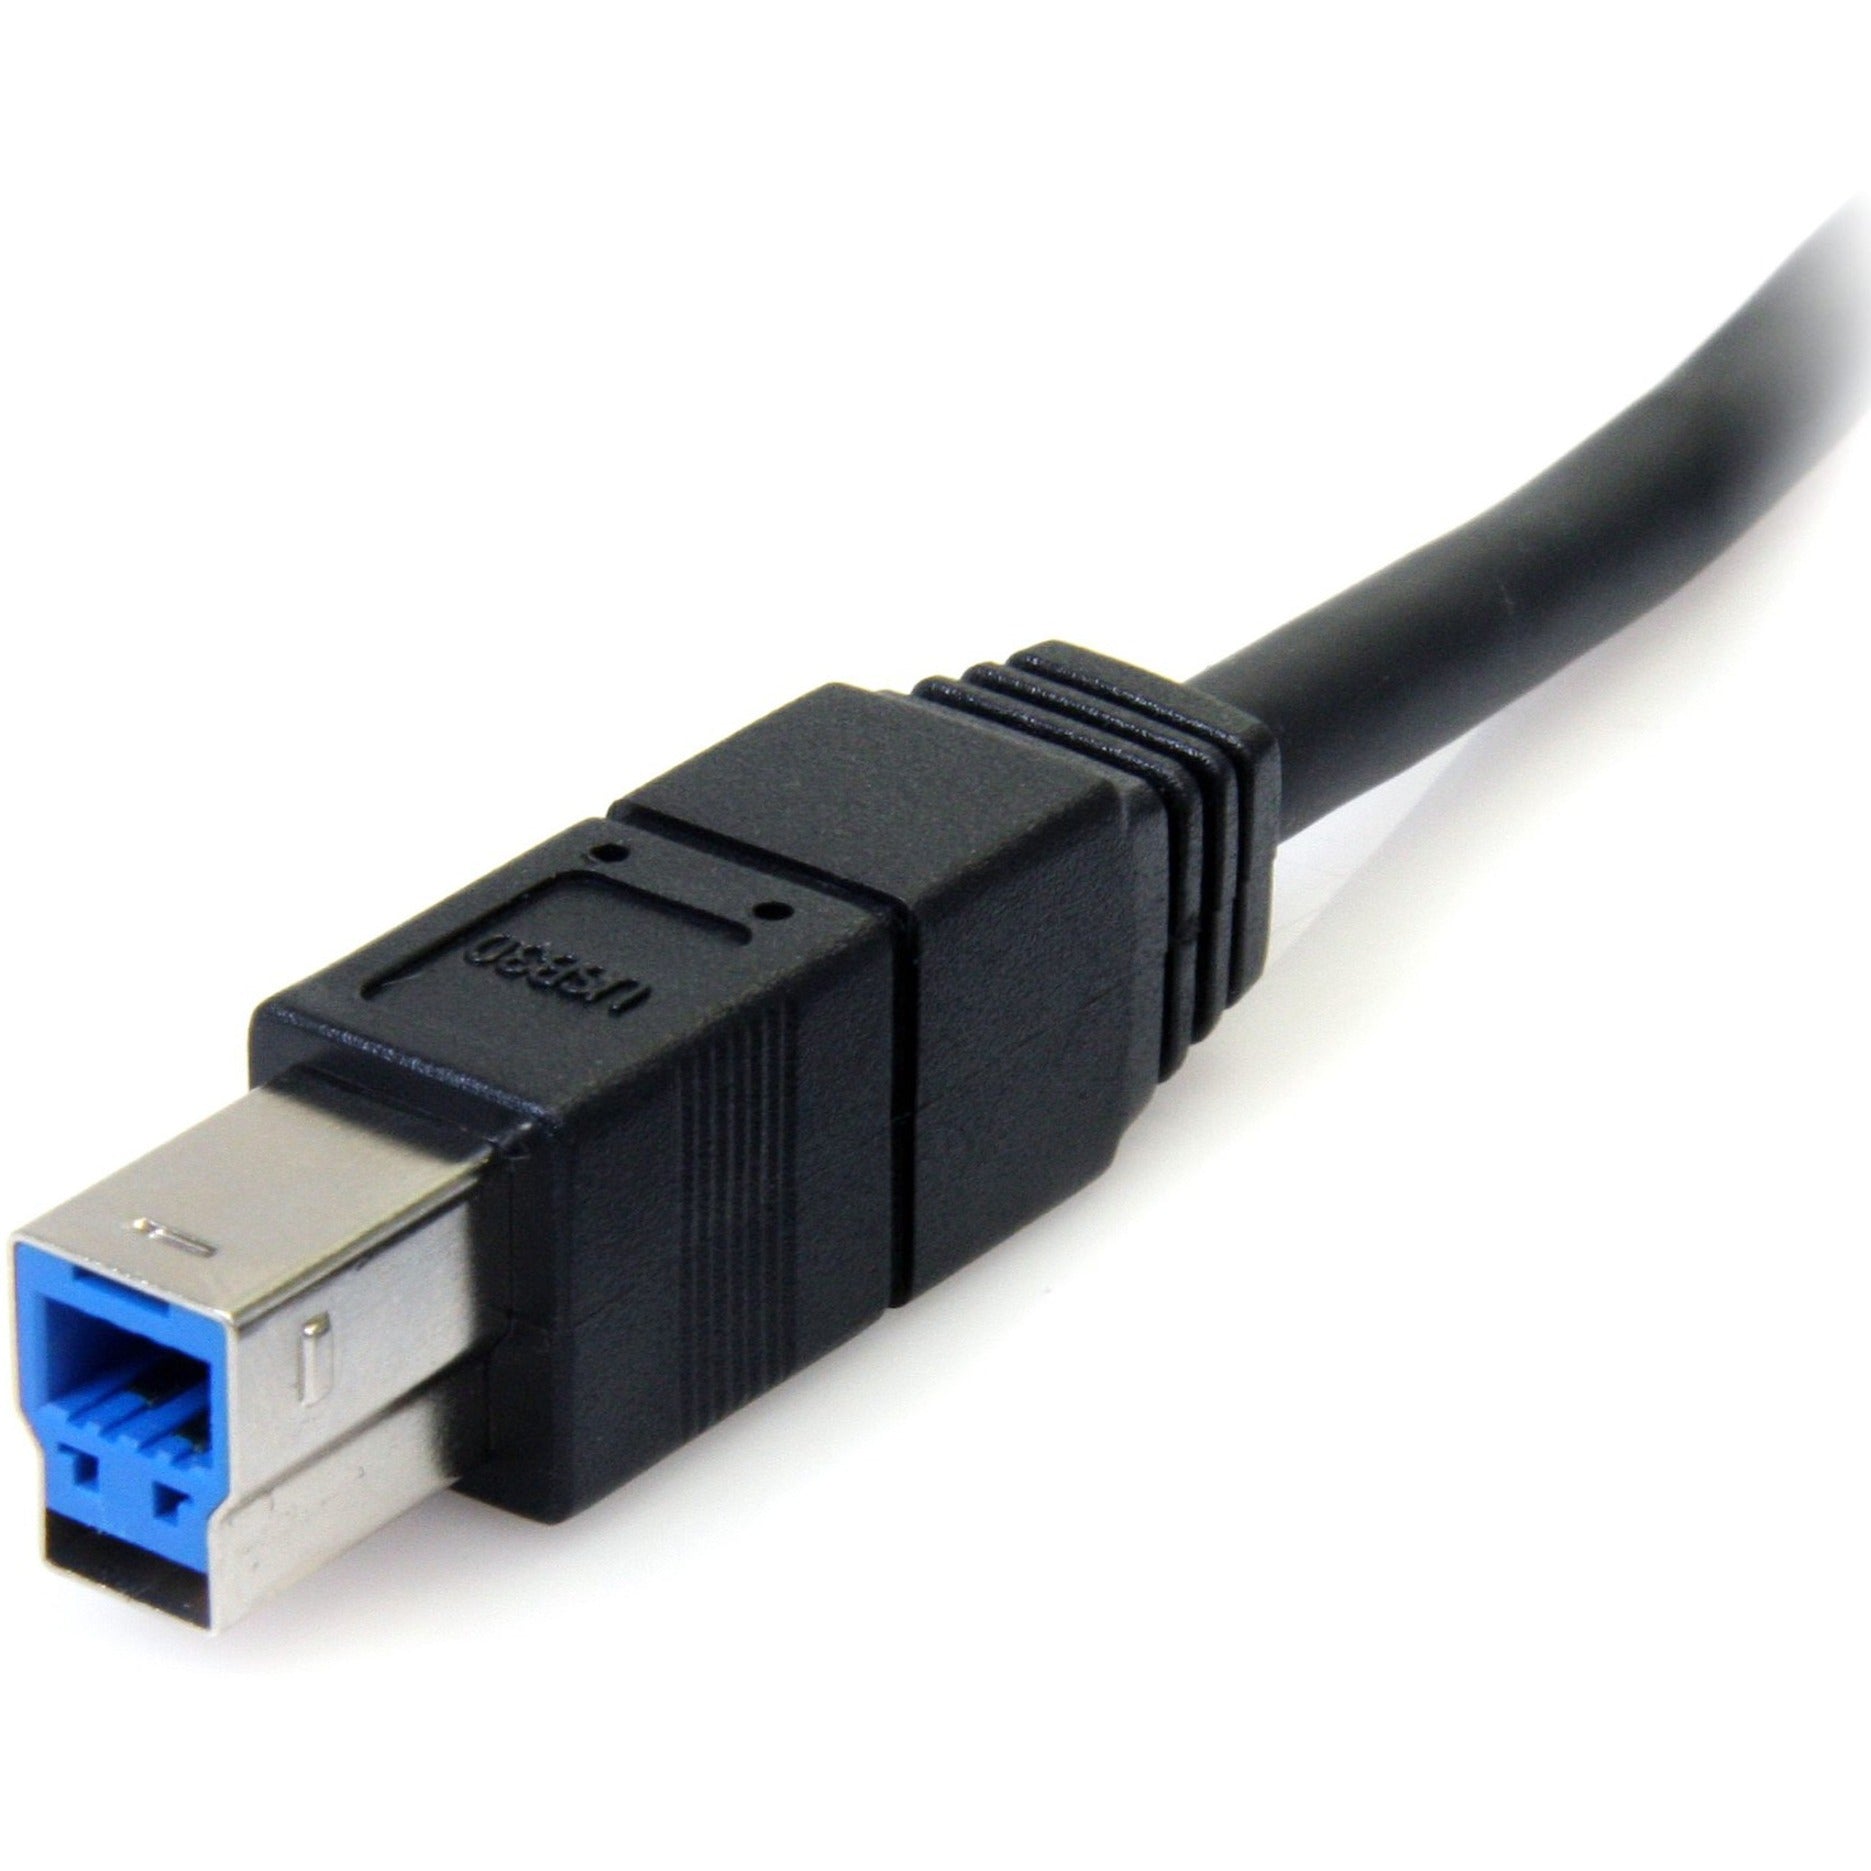 Marque: StarTech.com Câble USB 3.0 SuperSpeed noir de 6 pieds A vers B - M/M transfert de données haute vitesse garantie à vie